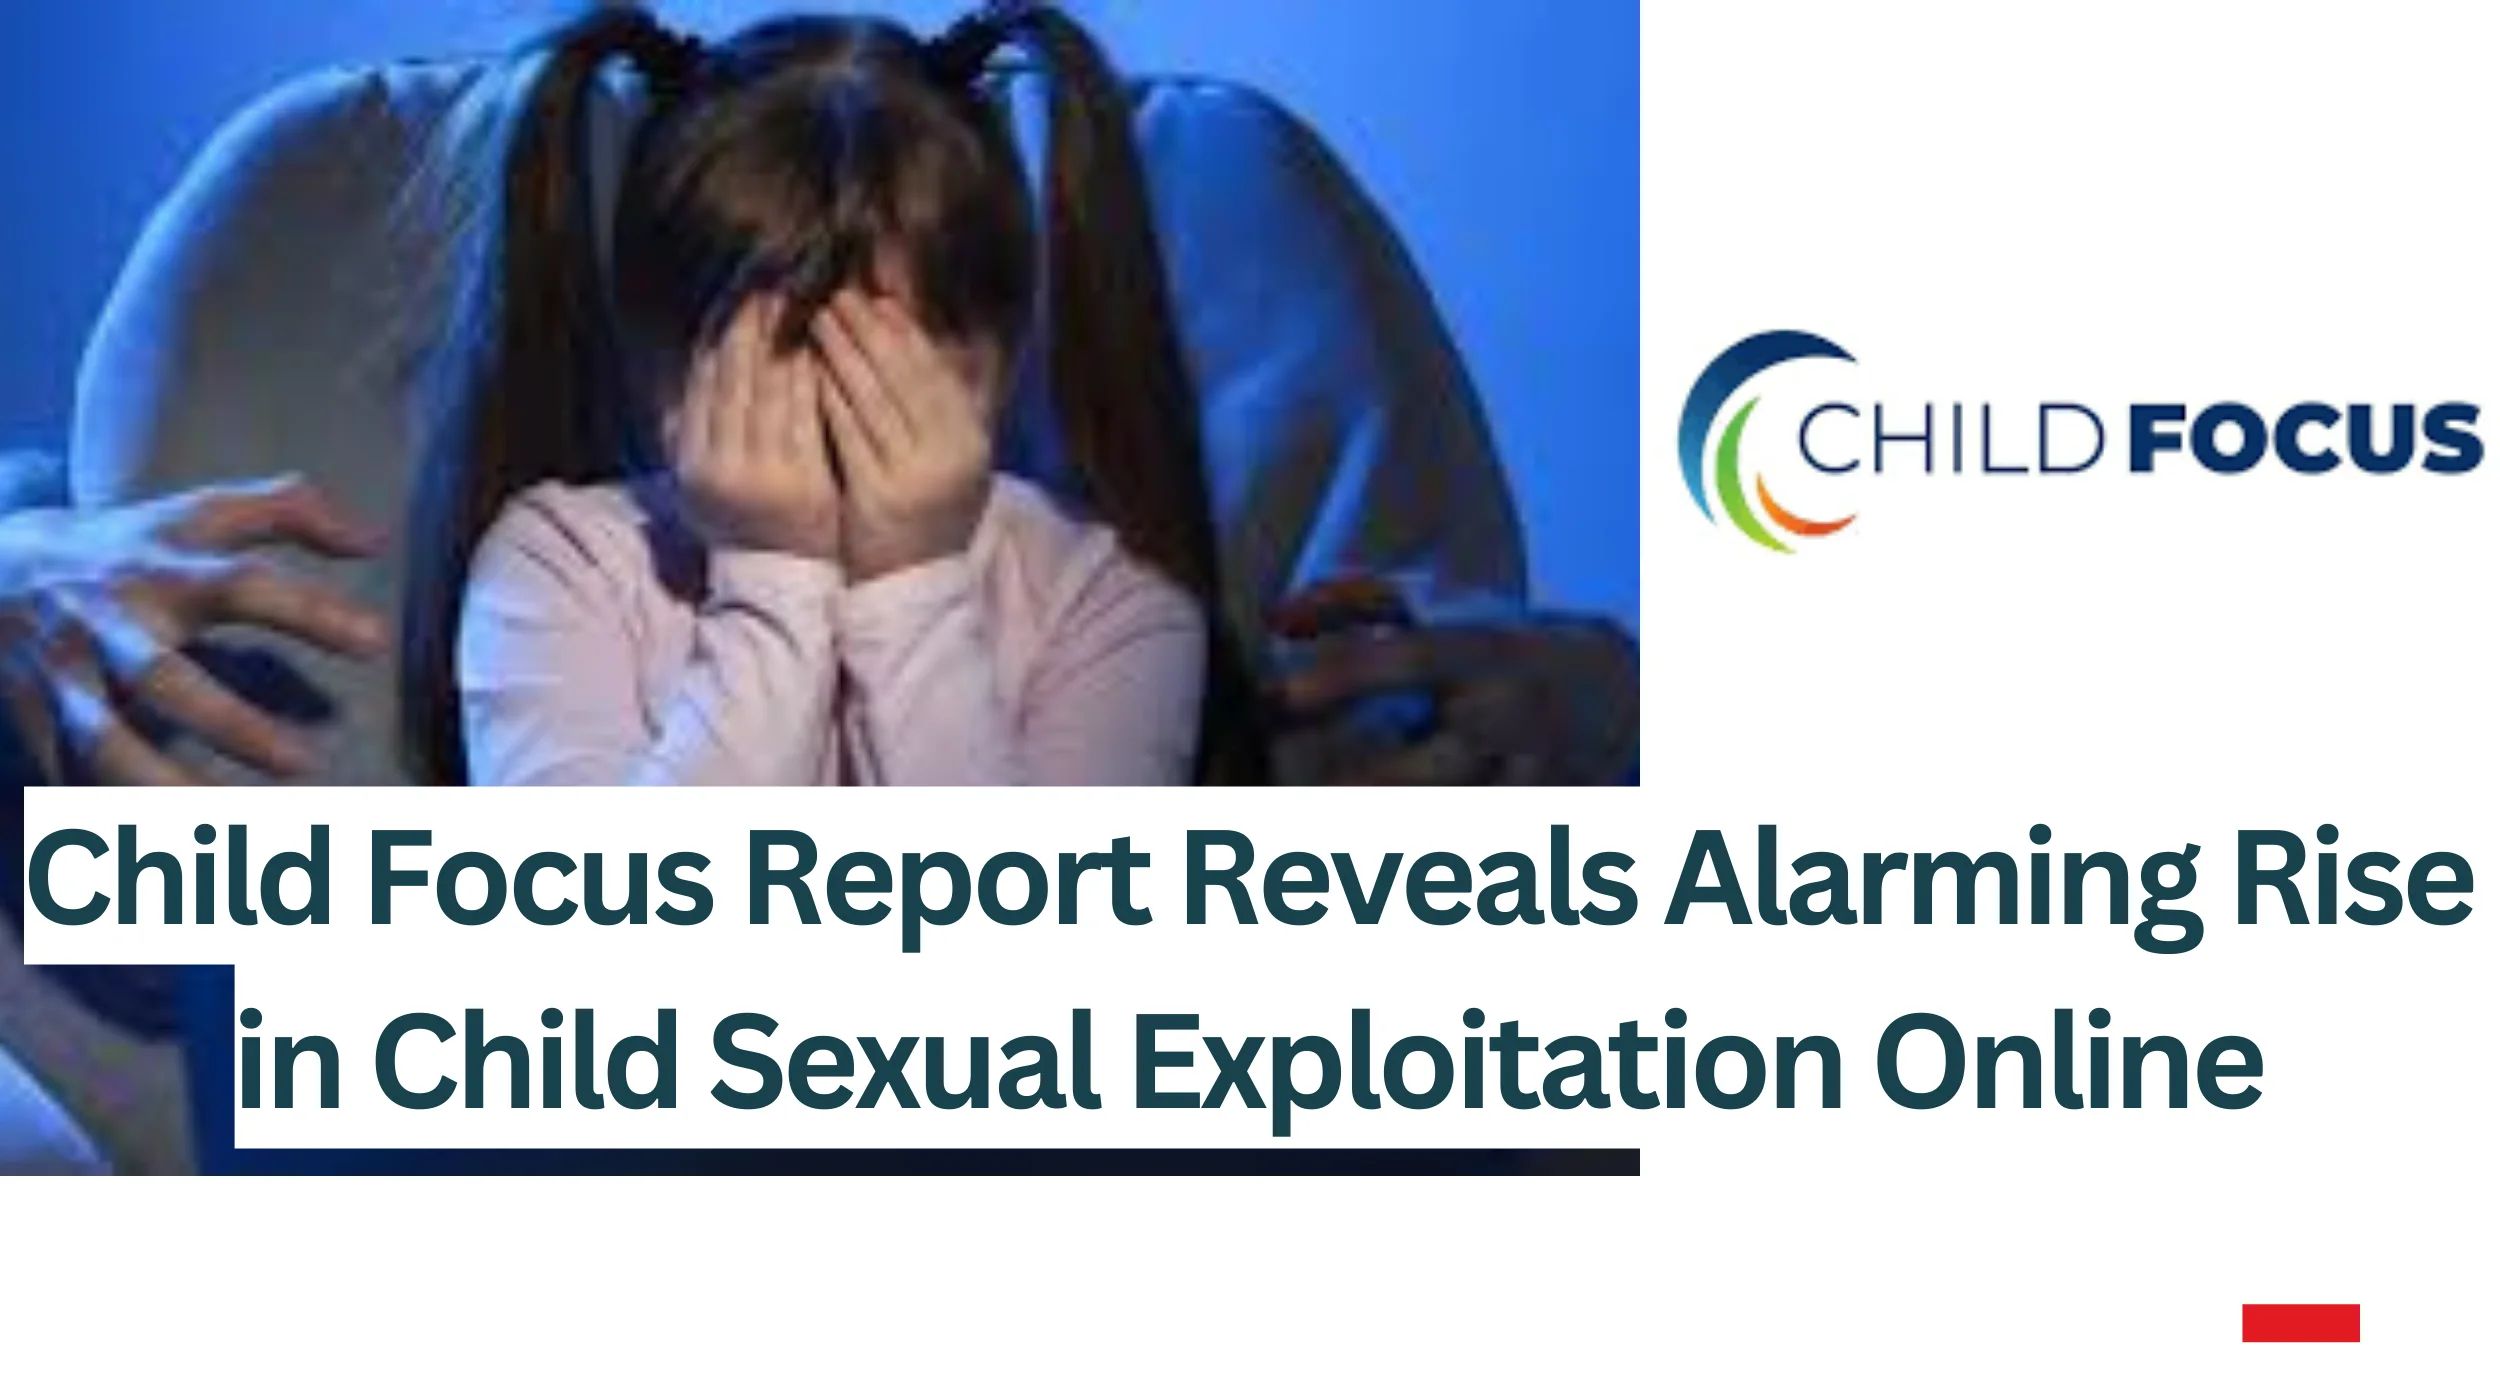 Child-Focus-Report-Reveals-Alarming-Rise-in-Child-Sexual-Exploitation